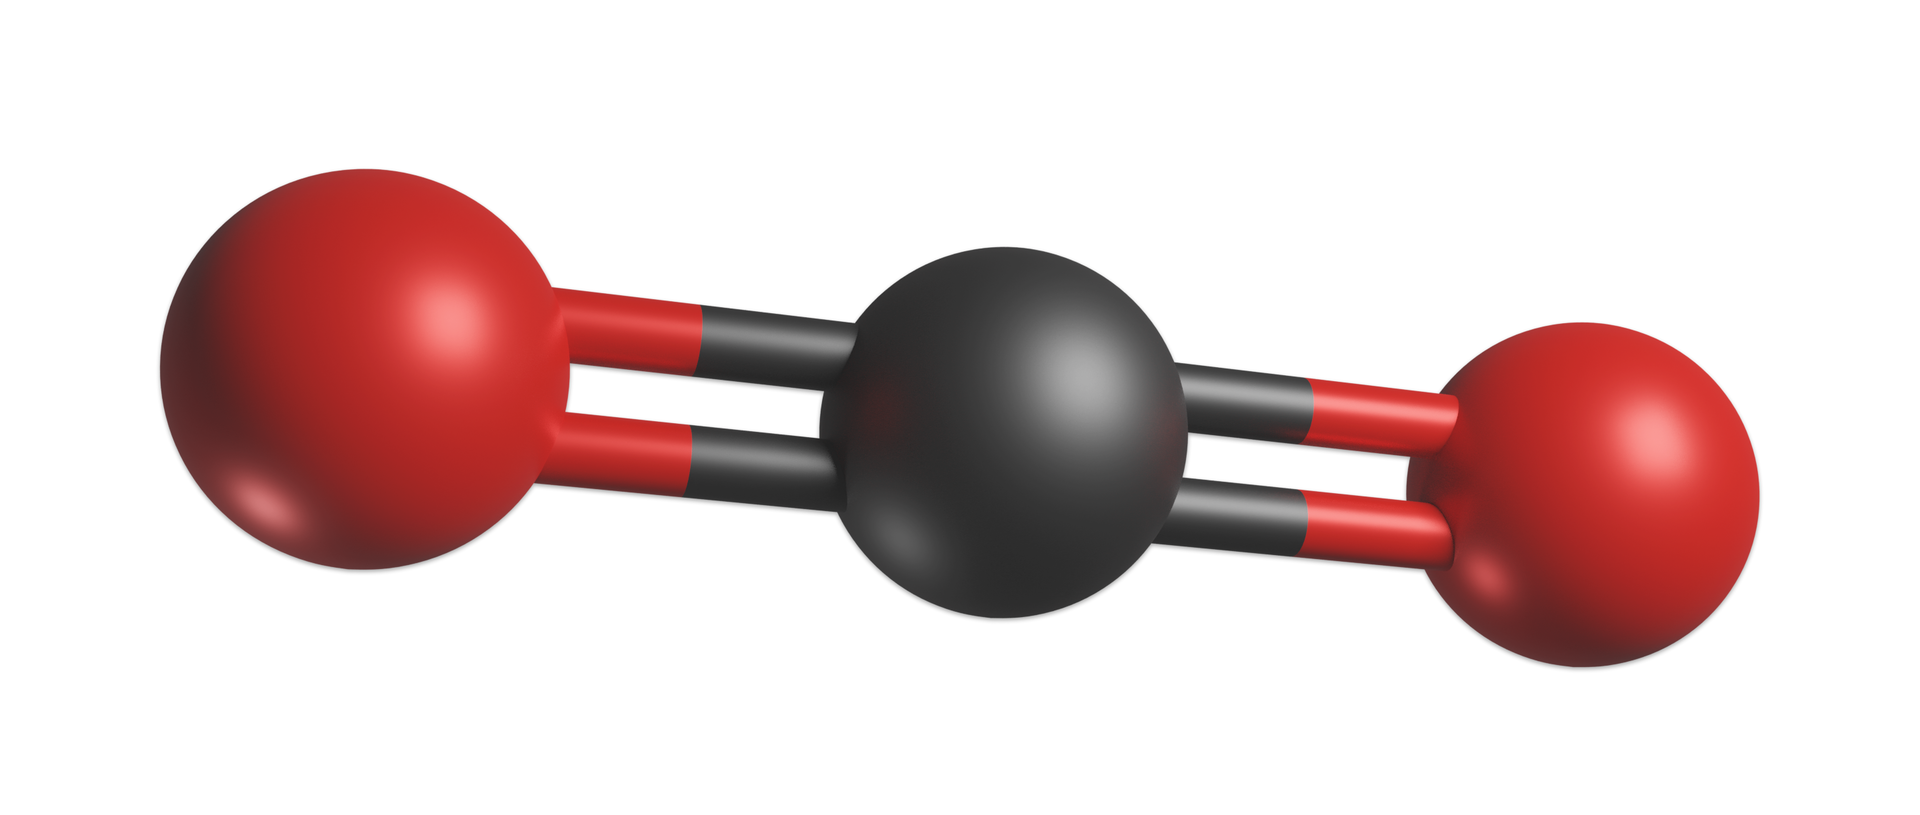 Ilustracja przedstawia model kulkowo‑pręcikowy tlenku węgla(&lt;math aria‑label="cztery"&gt;IV). Model stanowi czarna kulka symbolizująca atom węgla połączona z lewej oraz z prawej strony wiązaniami podwójnymi z czerwonymi kulkami symbolizującymi atomy tlenu. Atomy znajdują się w jednej linii. Wszystkie trzy atomy budujące cząsteczkę znajdują się w jednej linii.